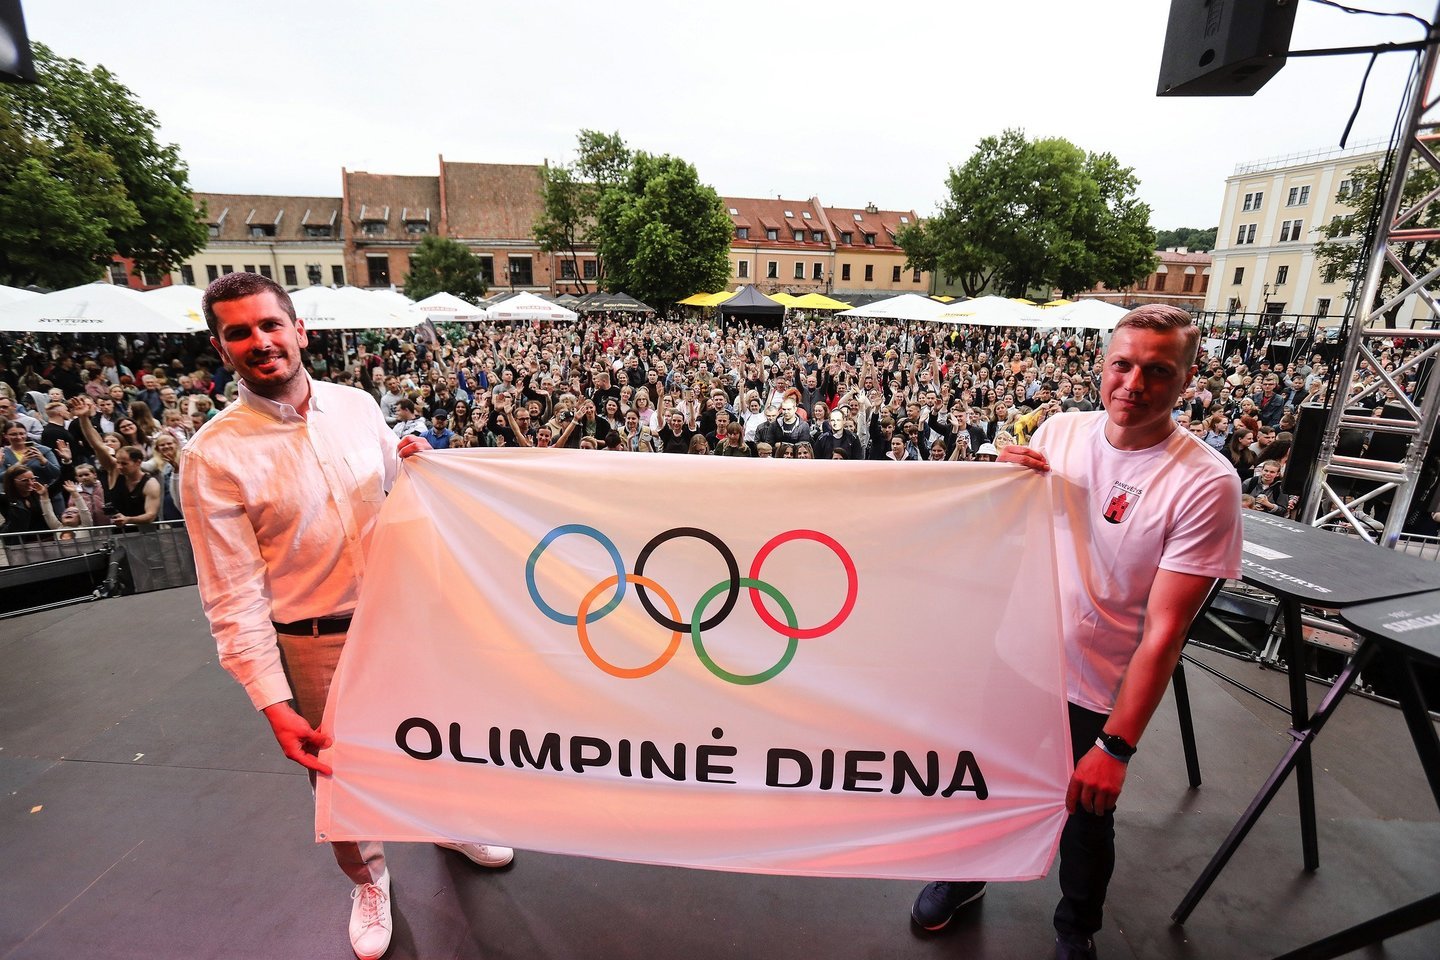  Olimpinė diena į Kauną grįžo su trenksmu: sporto šventėje – 20 tūkst. dalyvių ir būrys olimpiečių<br> LTOK nuotr.